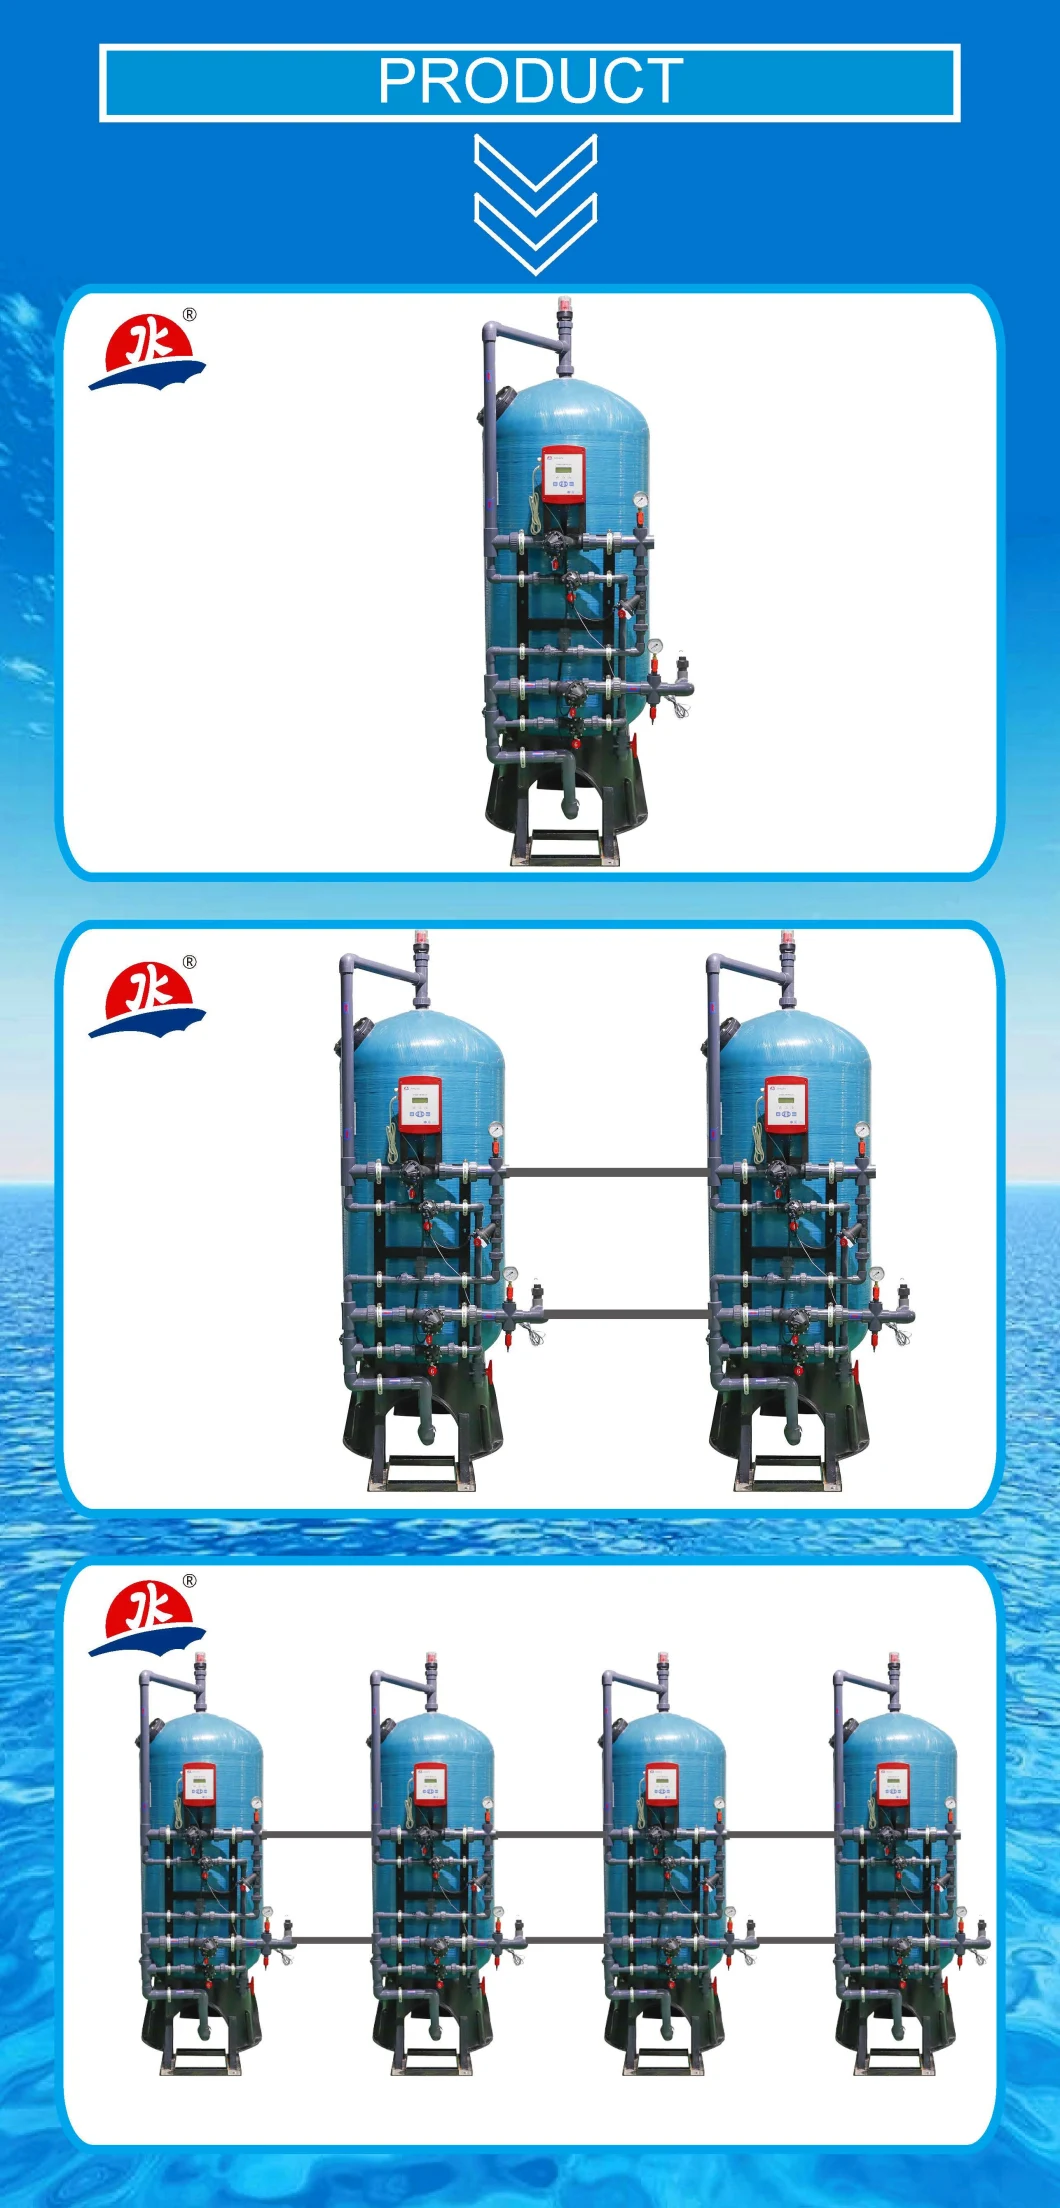 Jkmatic Jksd5 Industrial Water Multi-Media Filter and Softener Pressure Tanks for Water Softener